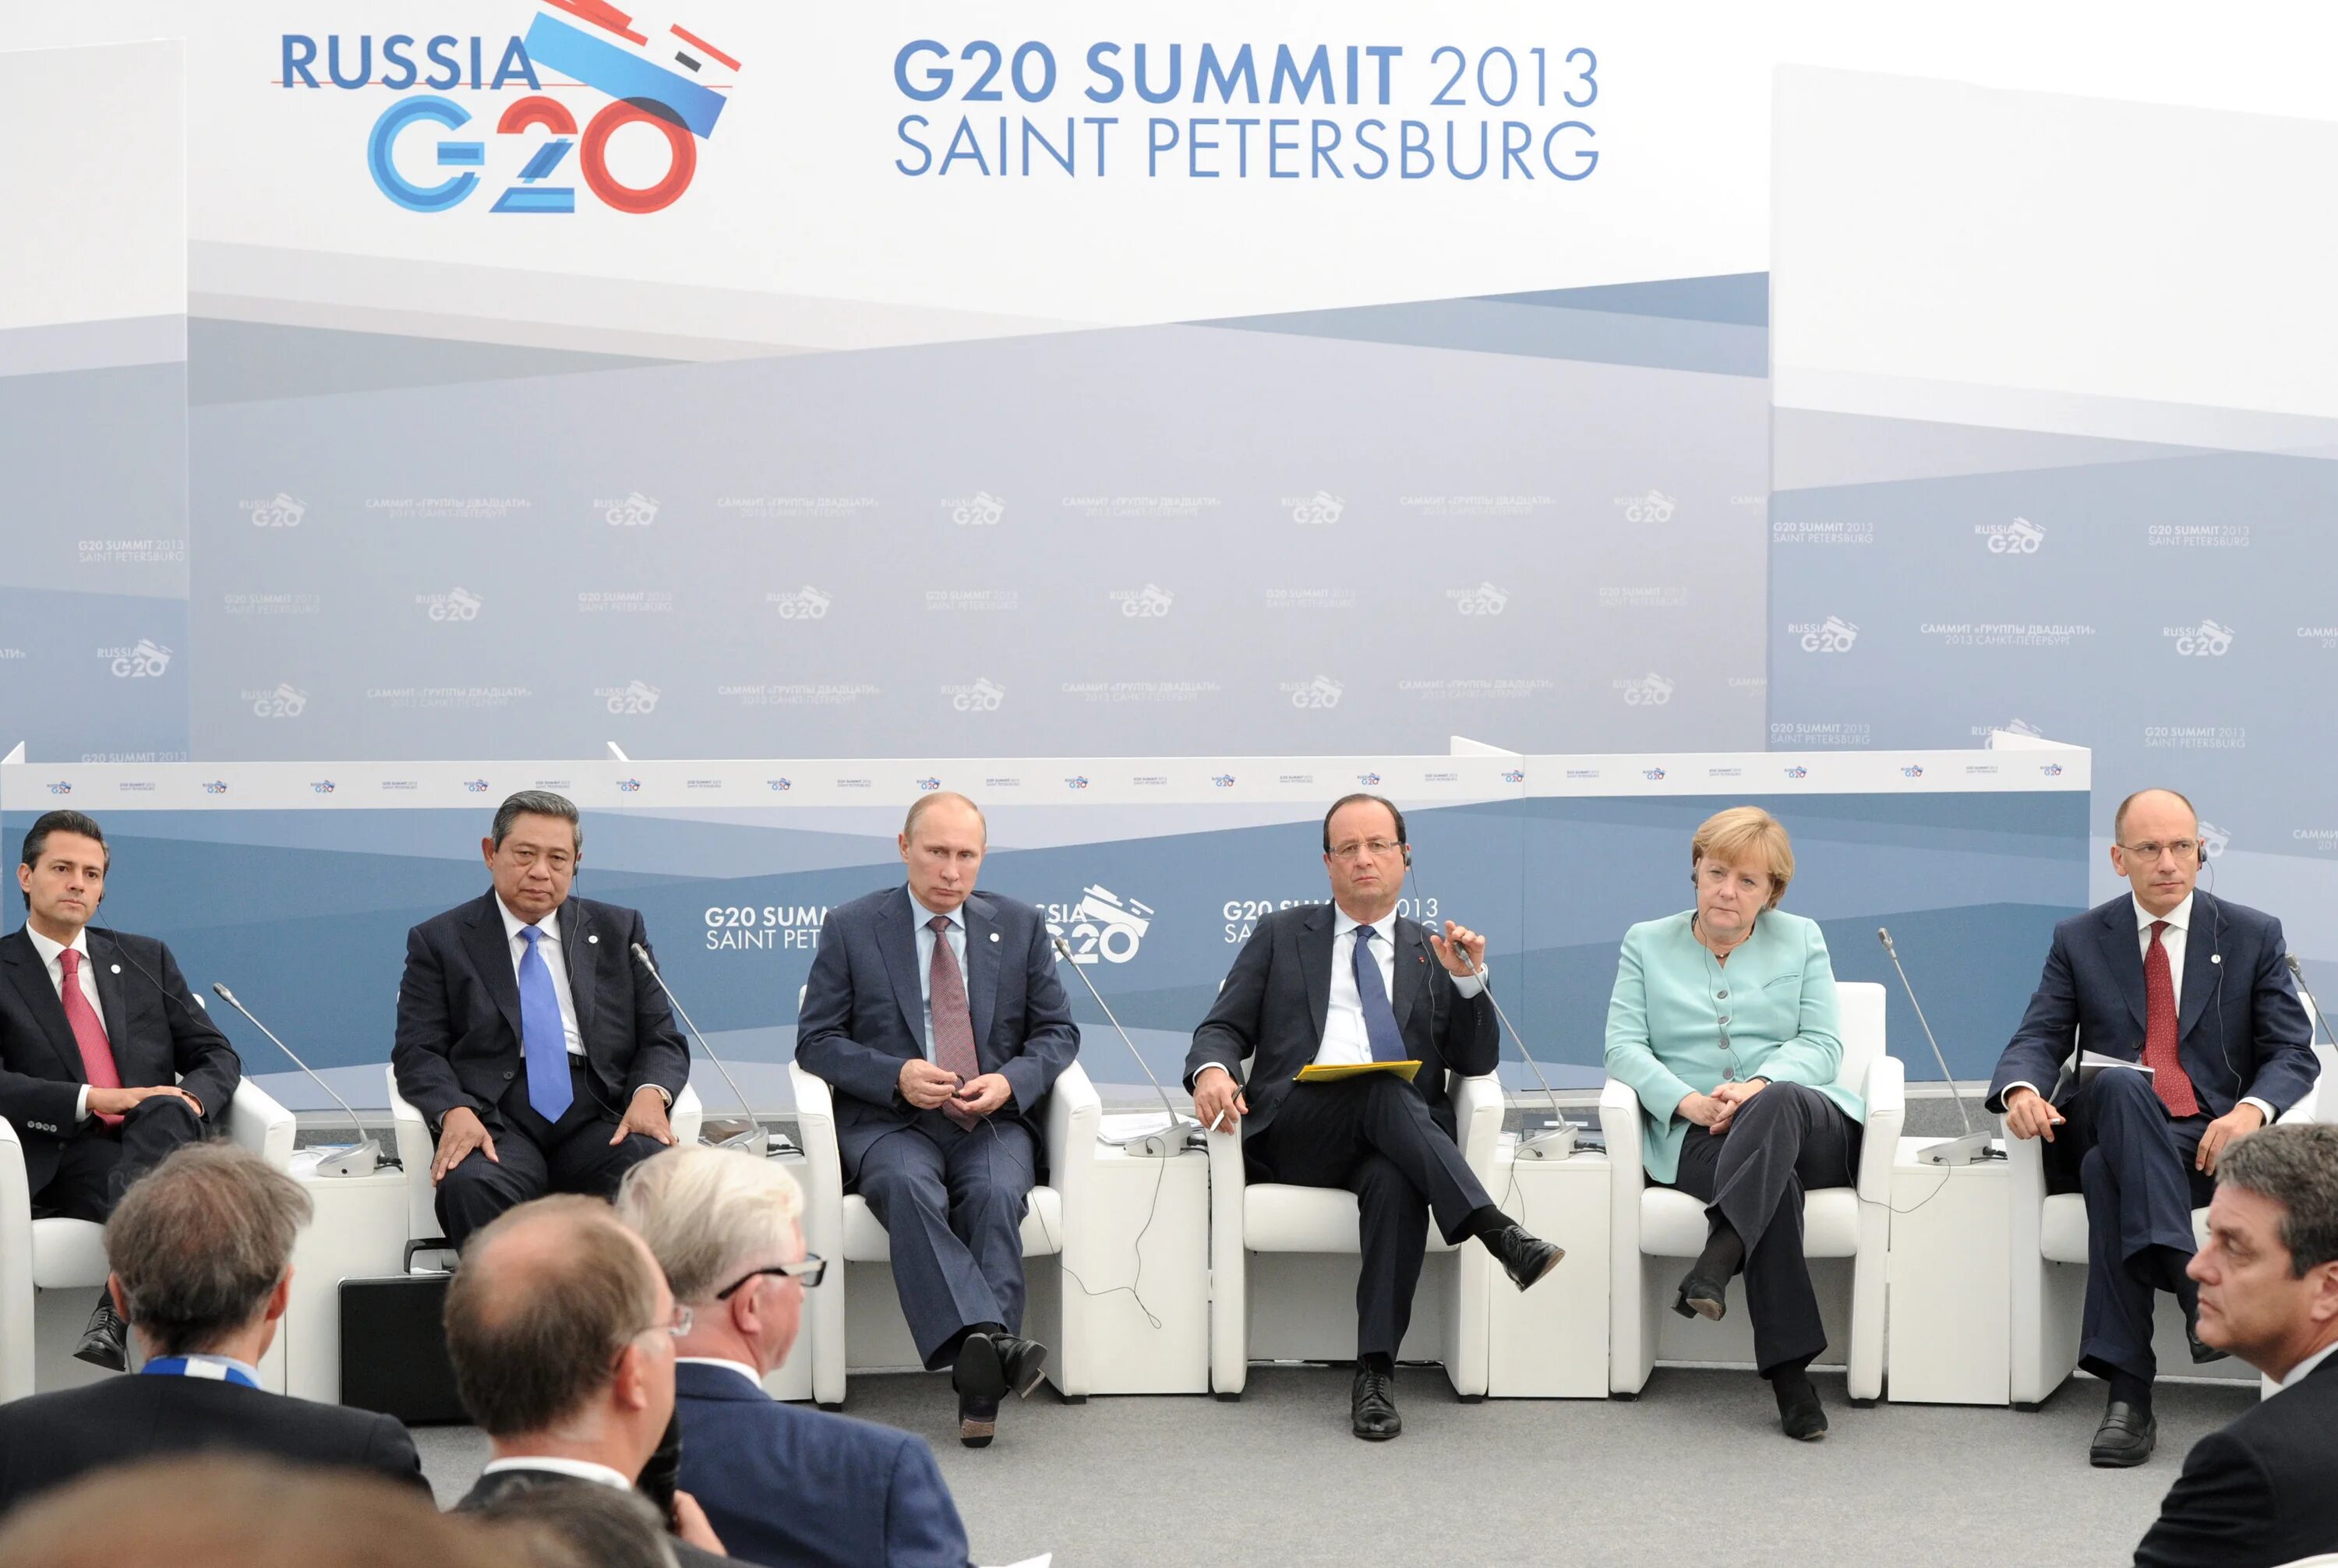 Саммит нижний. Саммит Джи 20. Саммит g20 в Санкт-Петербурге 2013. Саммит g-20 в Санкт-Петербурге. G20 представители.